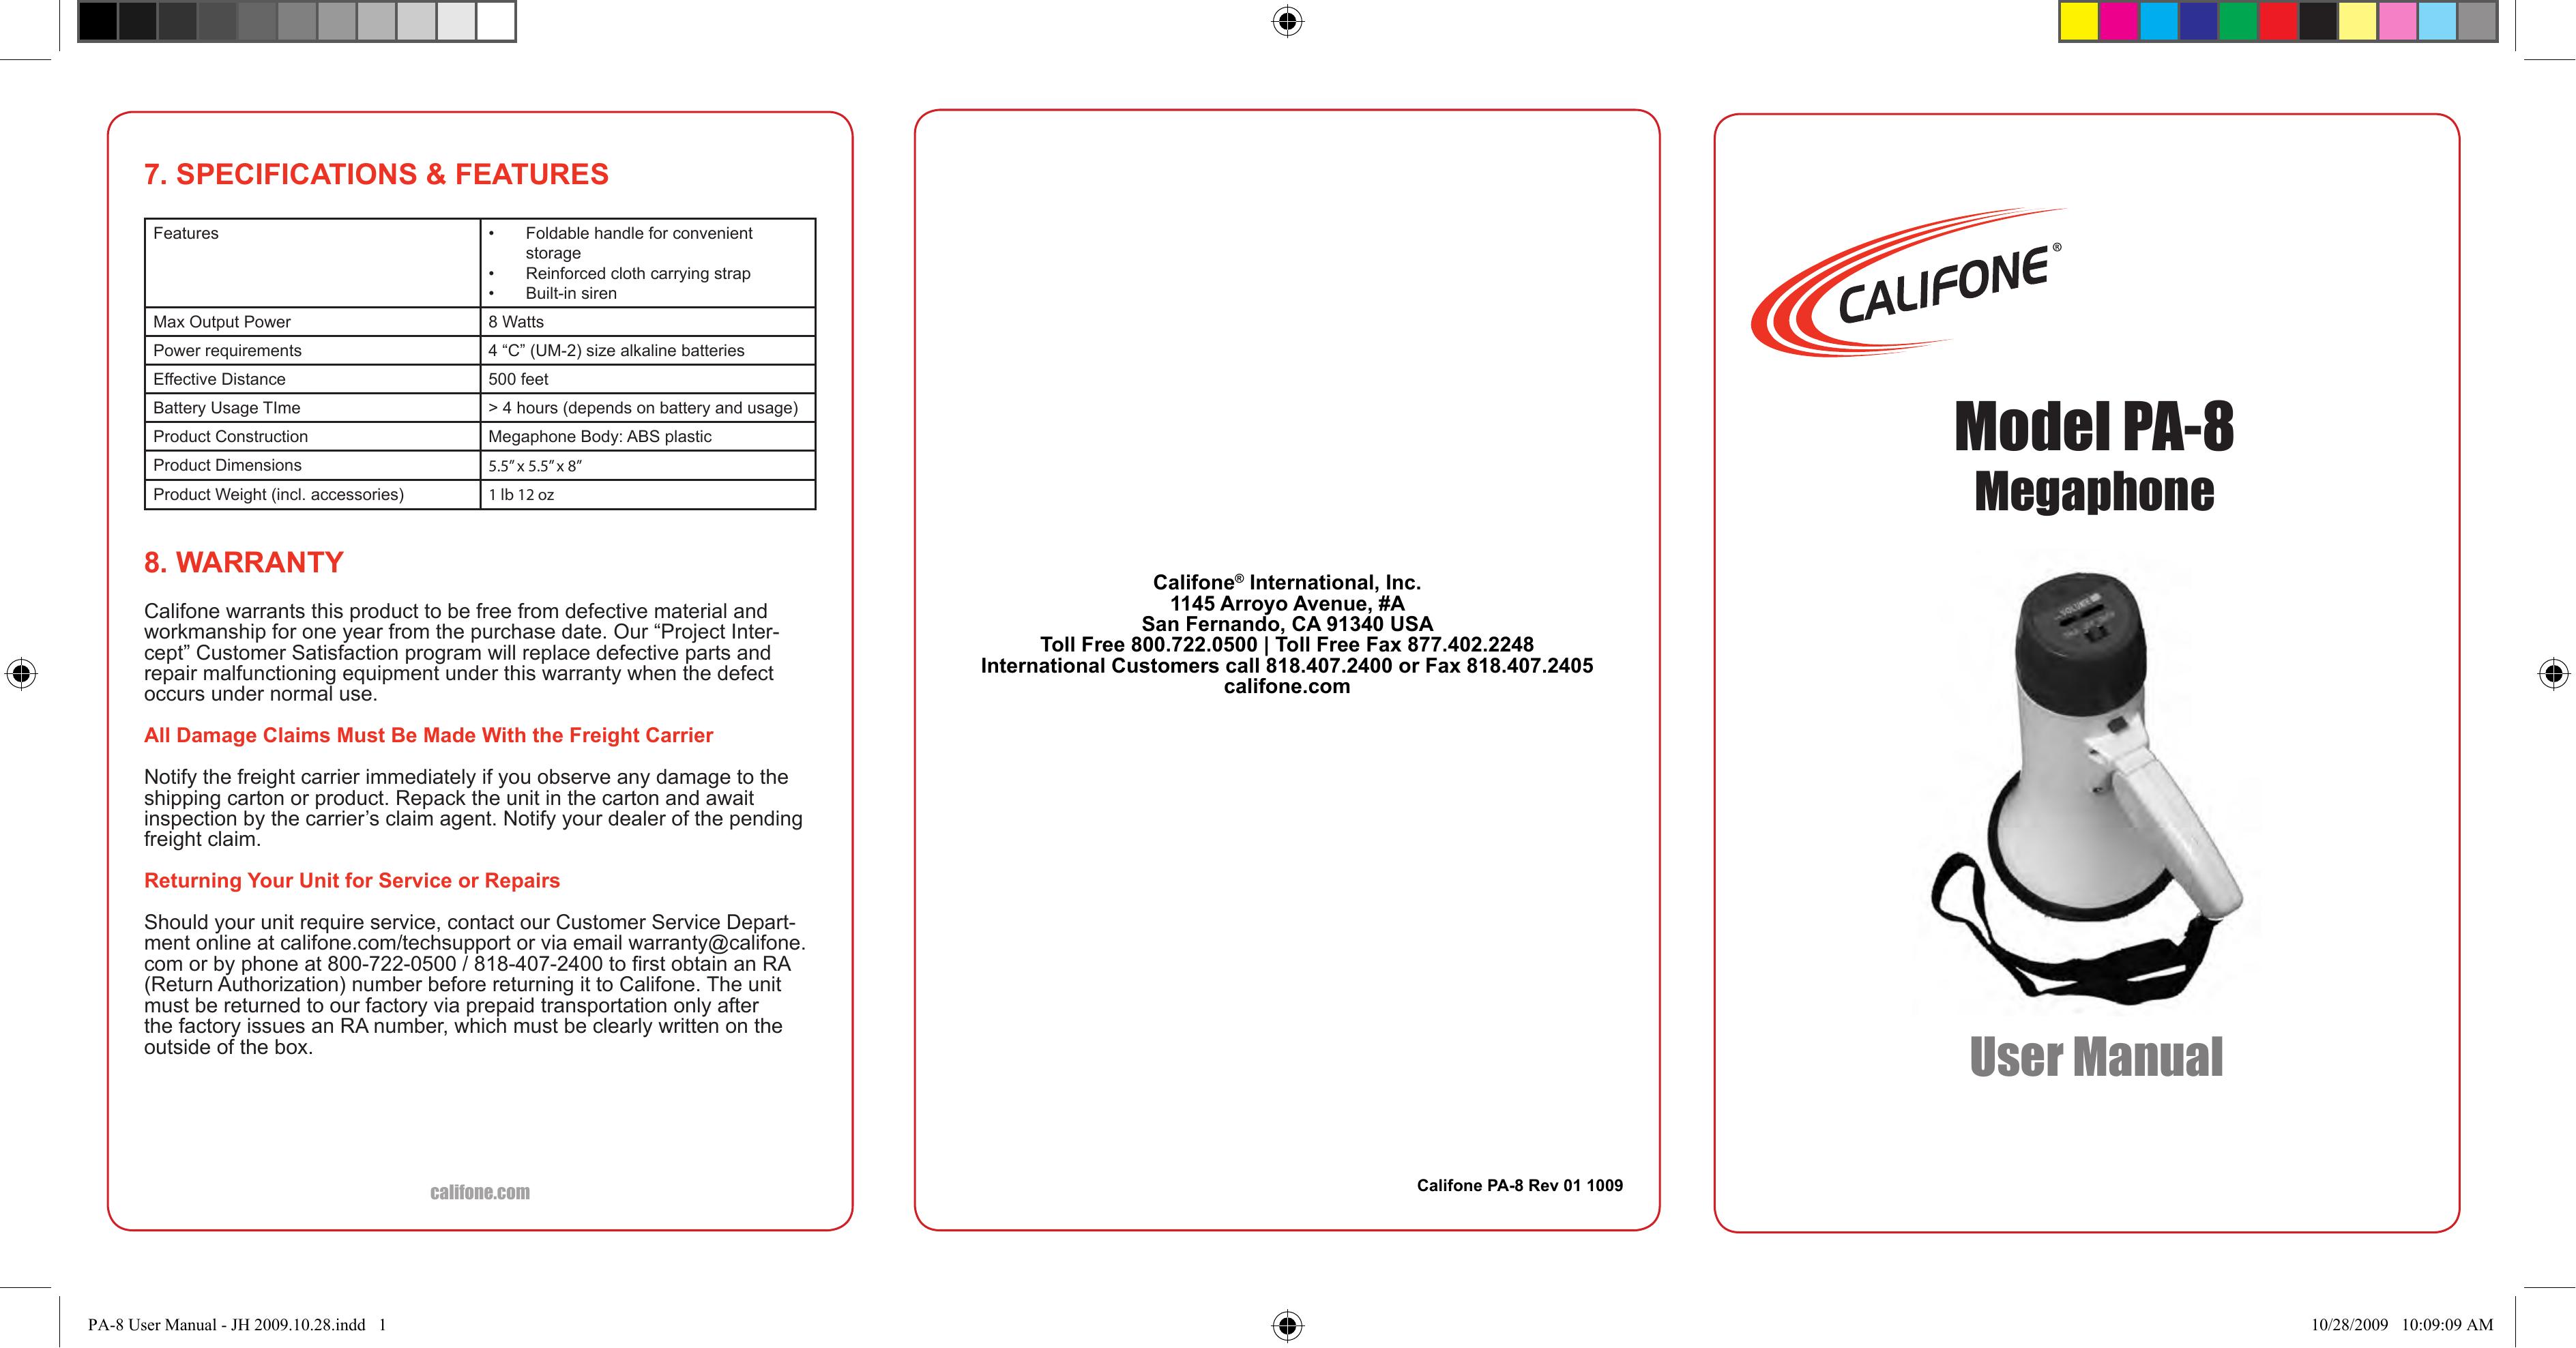 Califone Pa-8 Digital Camera User Manual